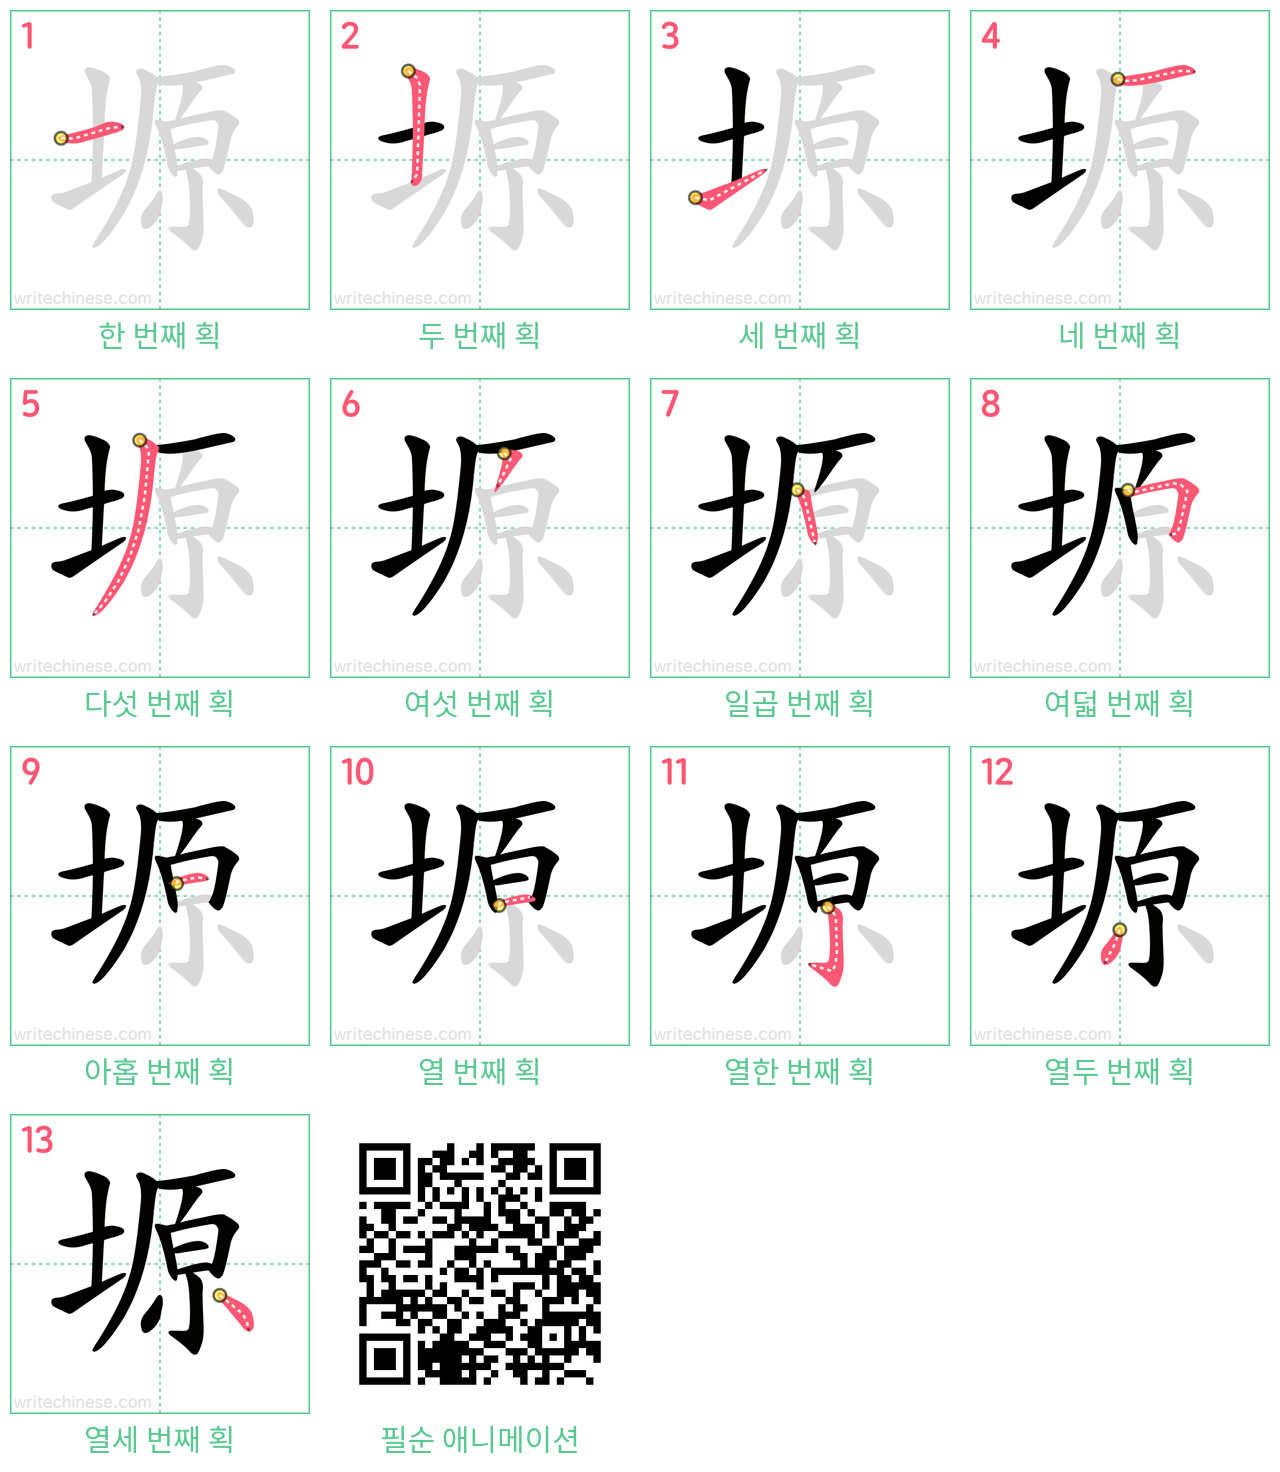 塬 step-by-step stroke order diagrams